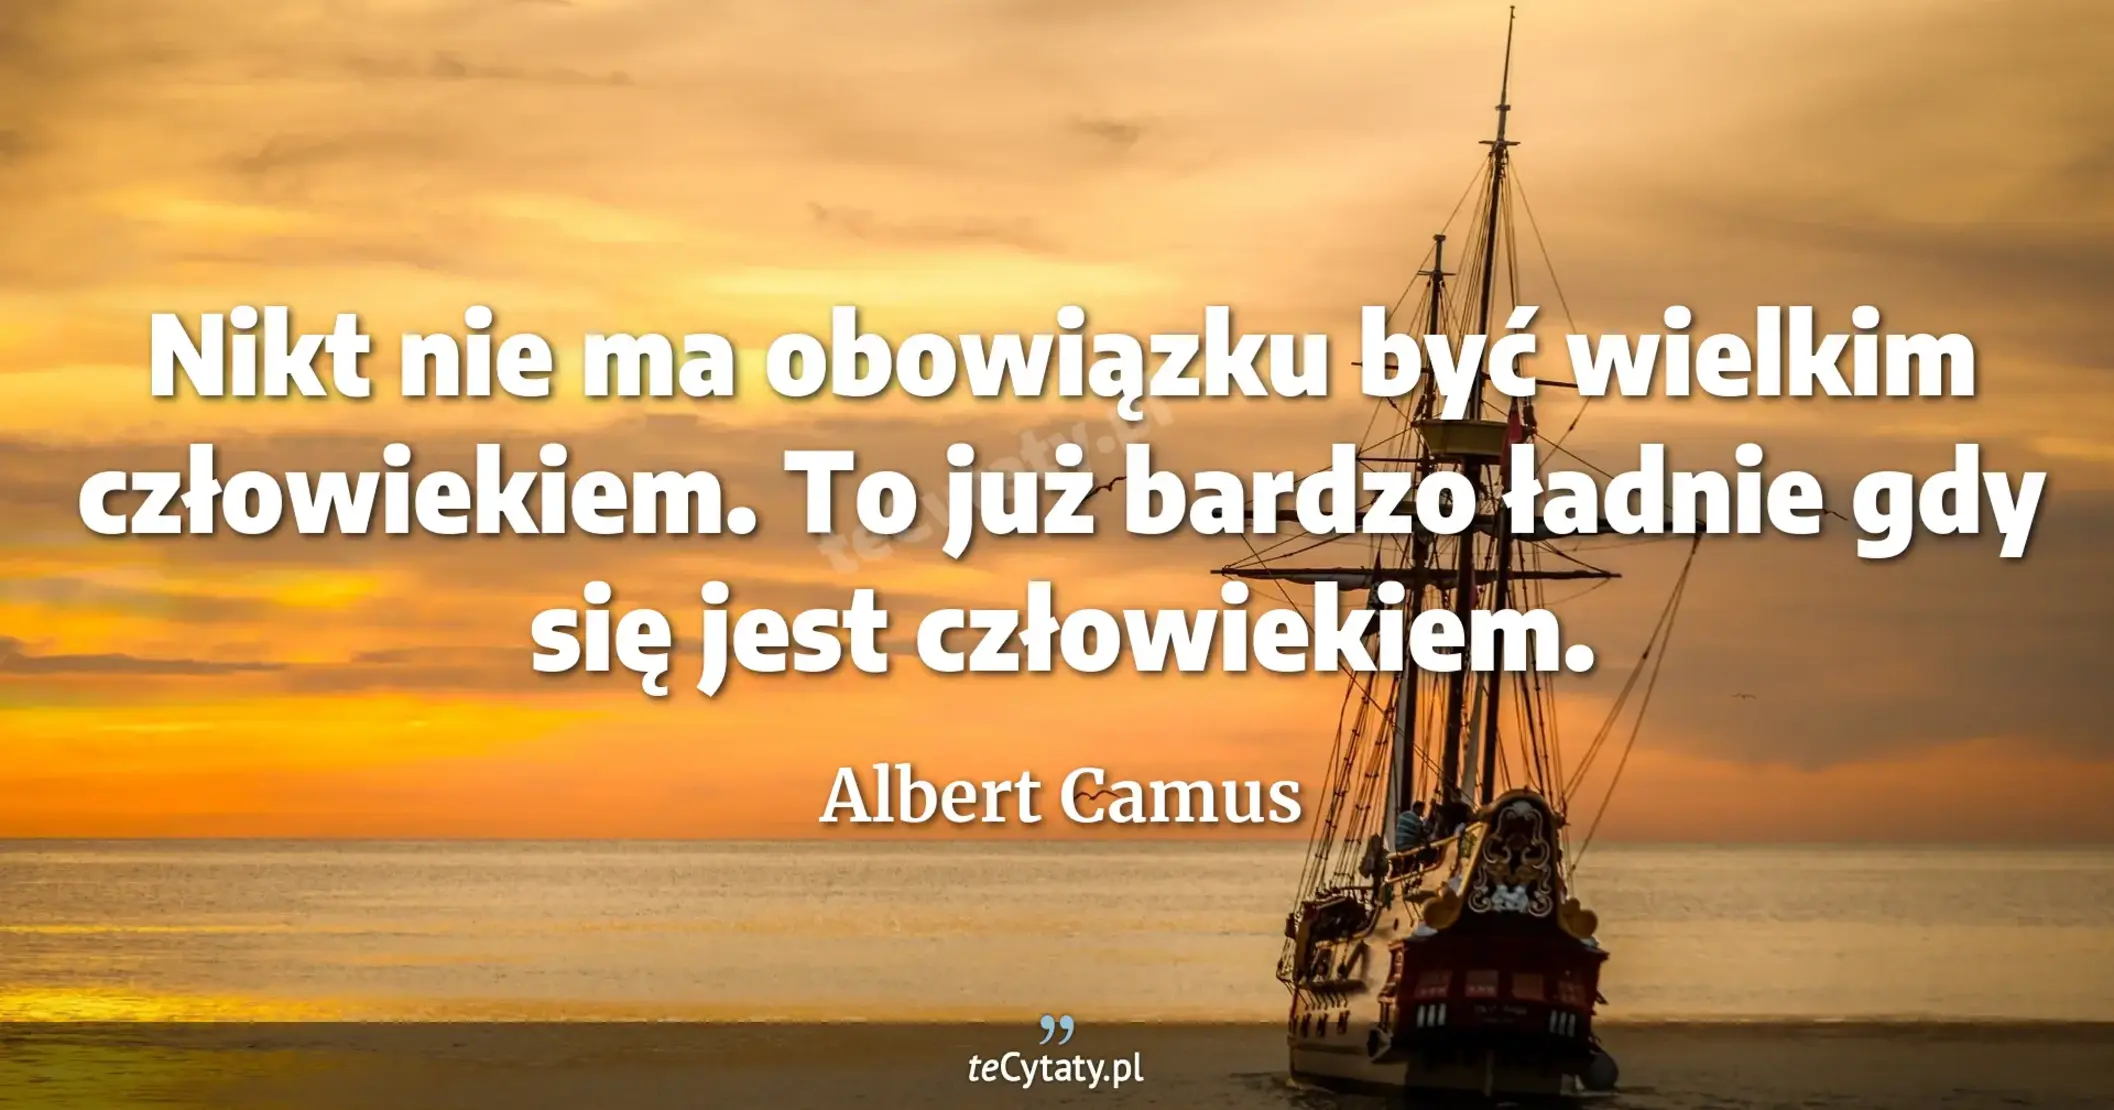 Nikt nie ma obowiązku być wielkim człowiekiem. To już bardzo ładnie gdy się jest człowiekiem. - Albert Camus